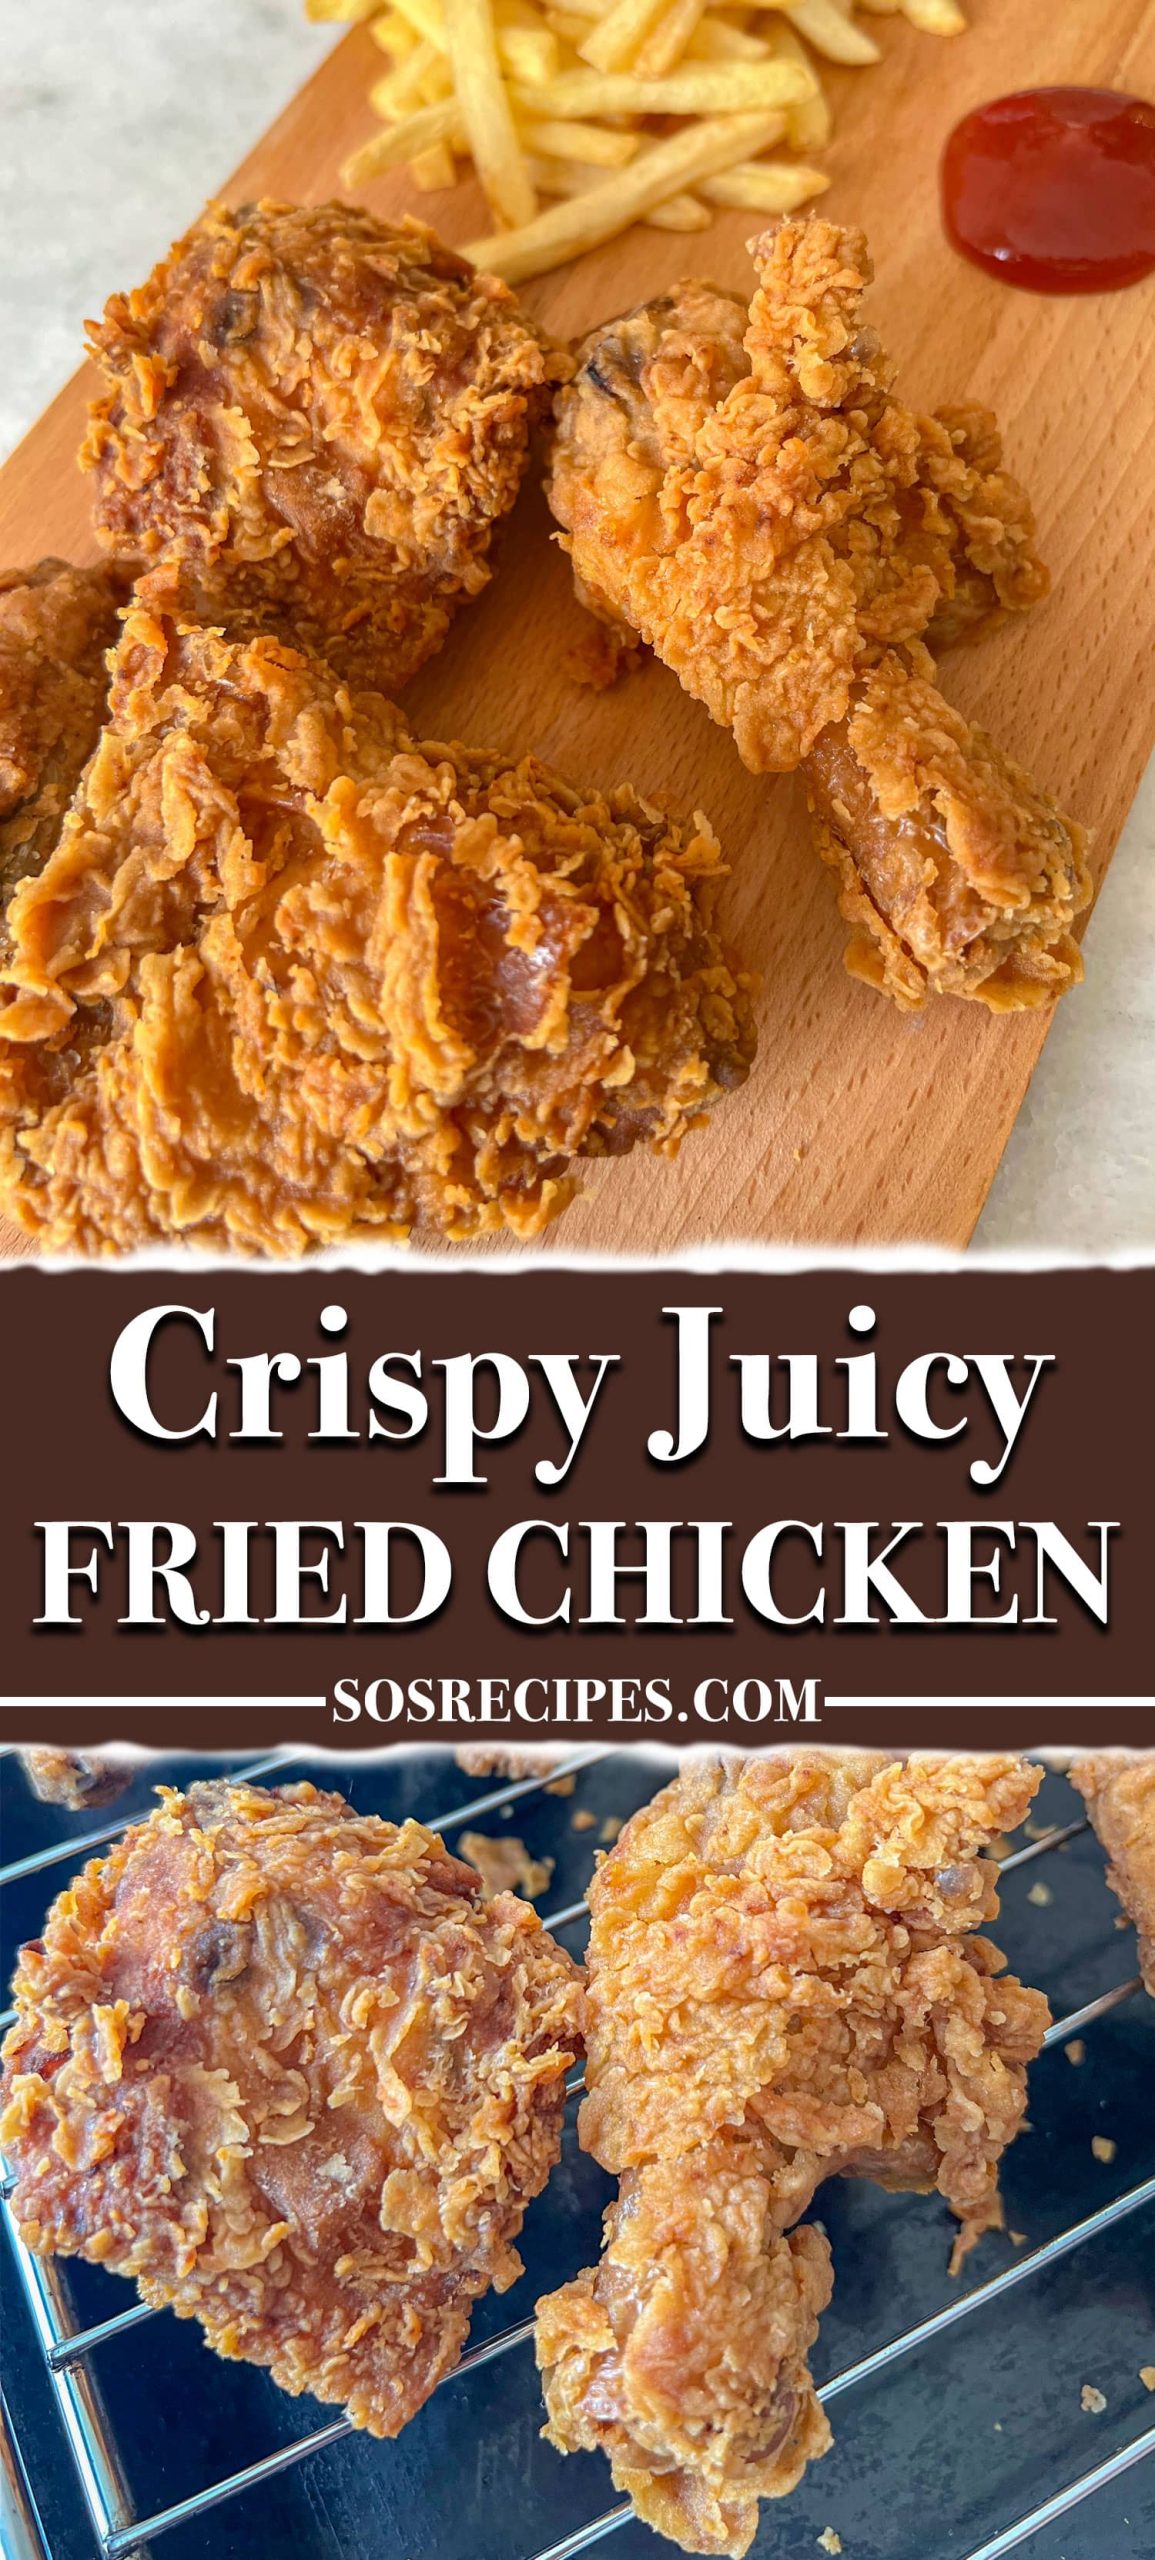 Crispy Juicy Fried Chicken - RECIPE